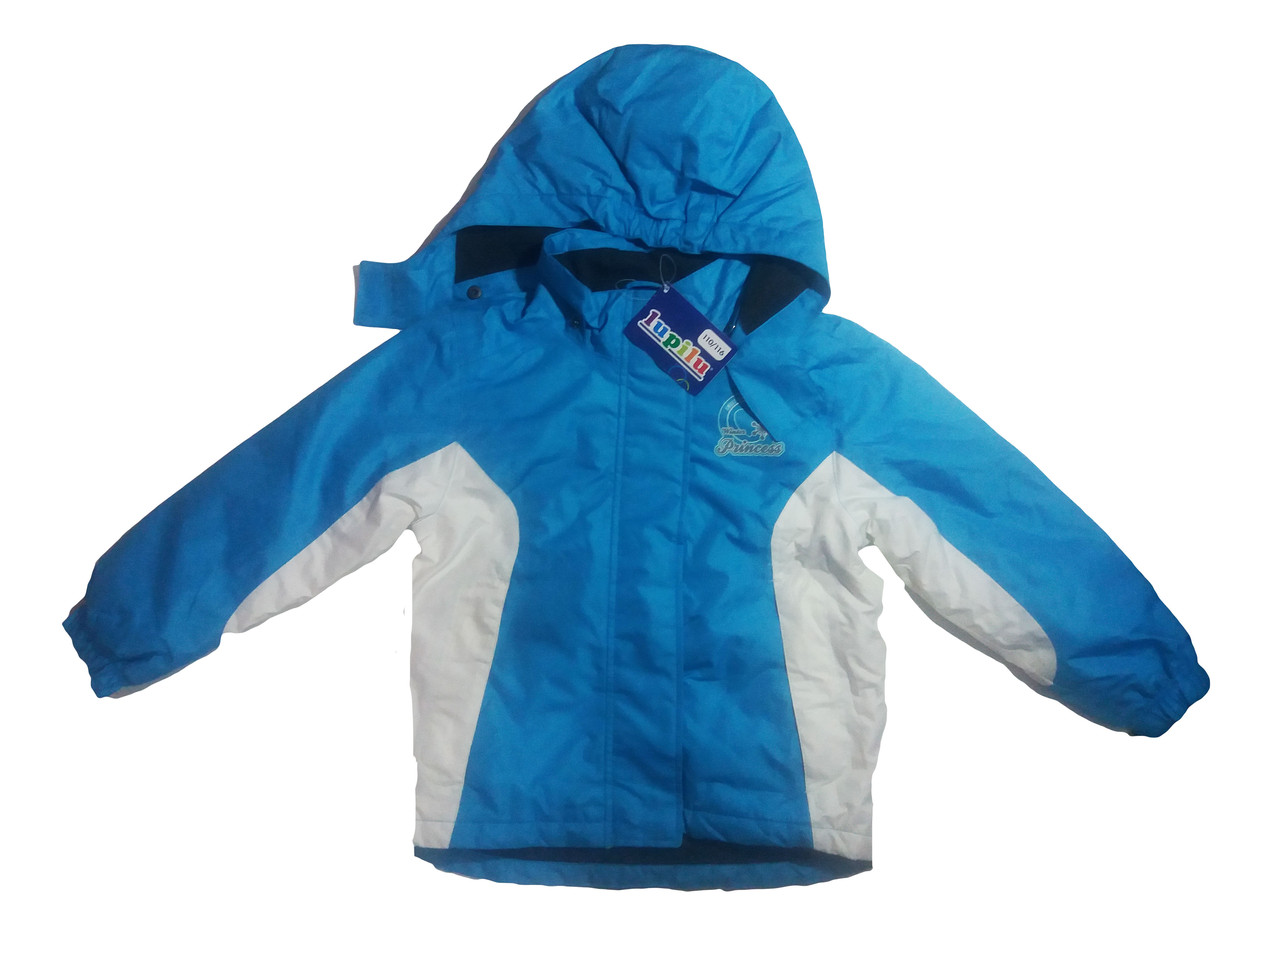 Куртка  для девочки, Lupilu, размеры 98/104,110/116,110/116,110/116 , арт. Л-407